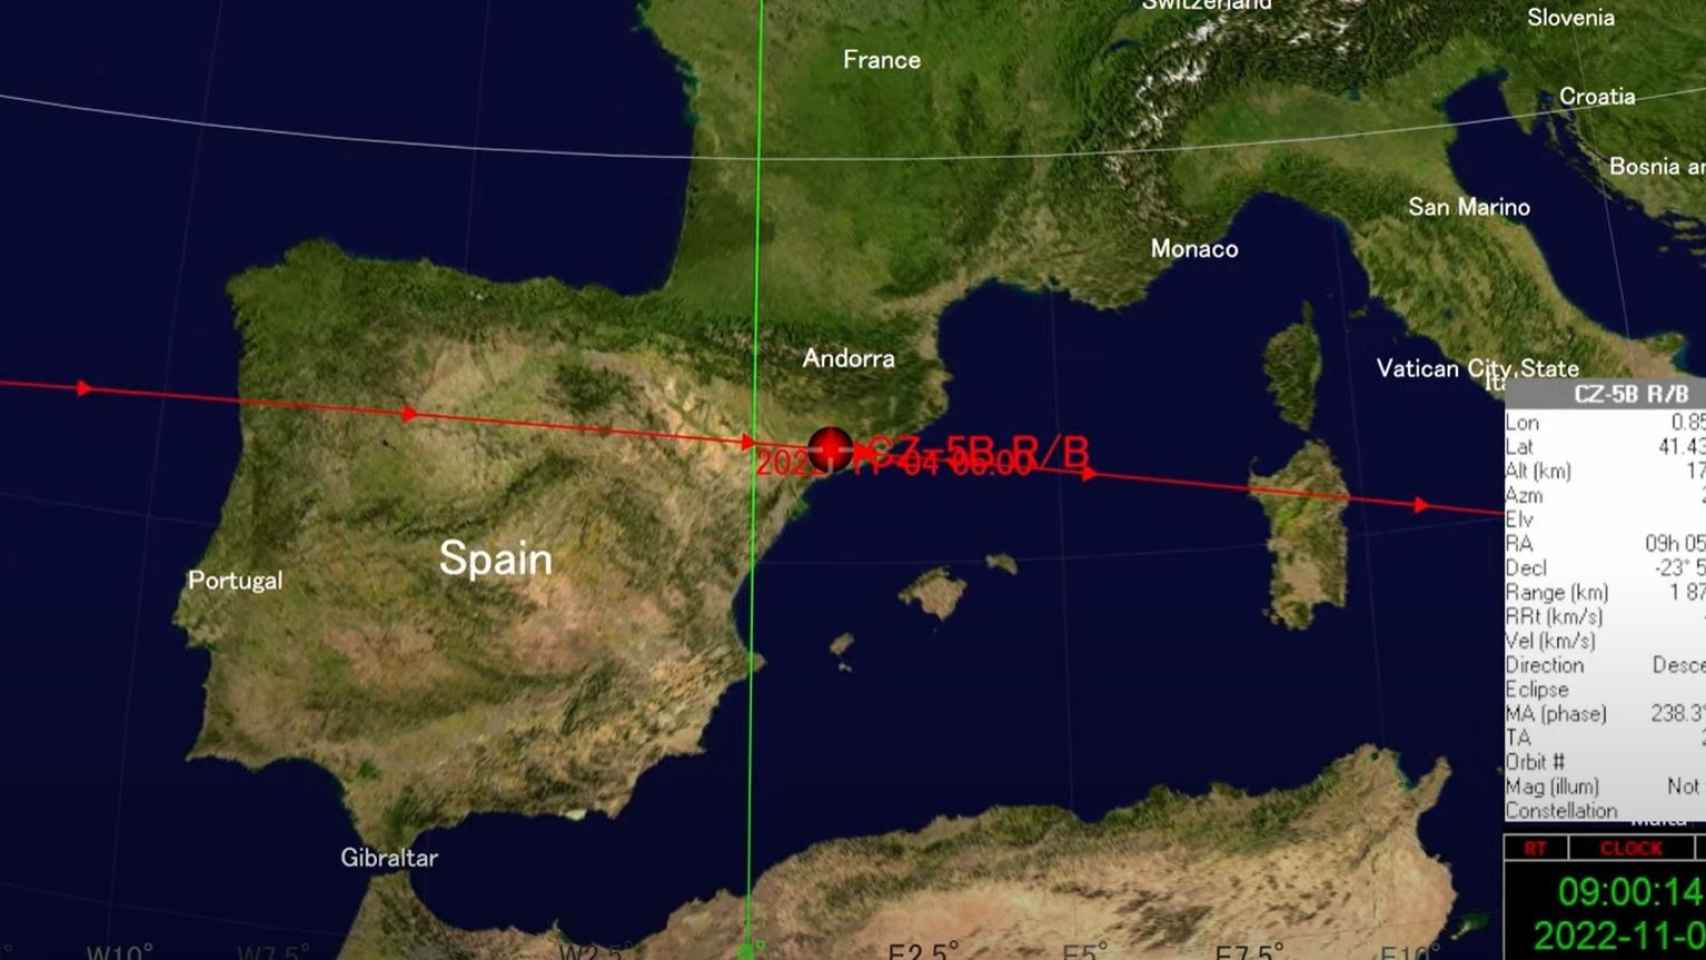 Trayectoria sobre España de los restos del cohete chino / SATELLITE TRACKER 3D